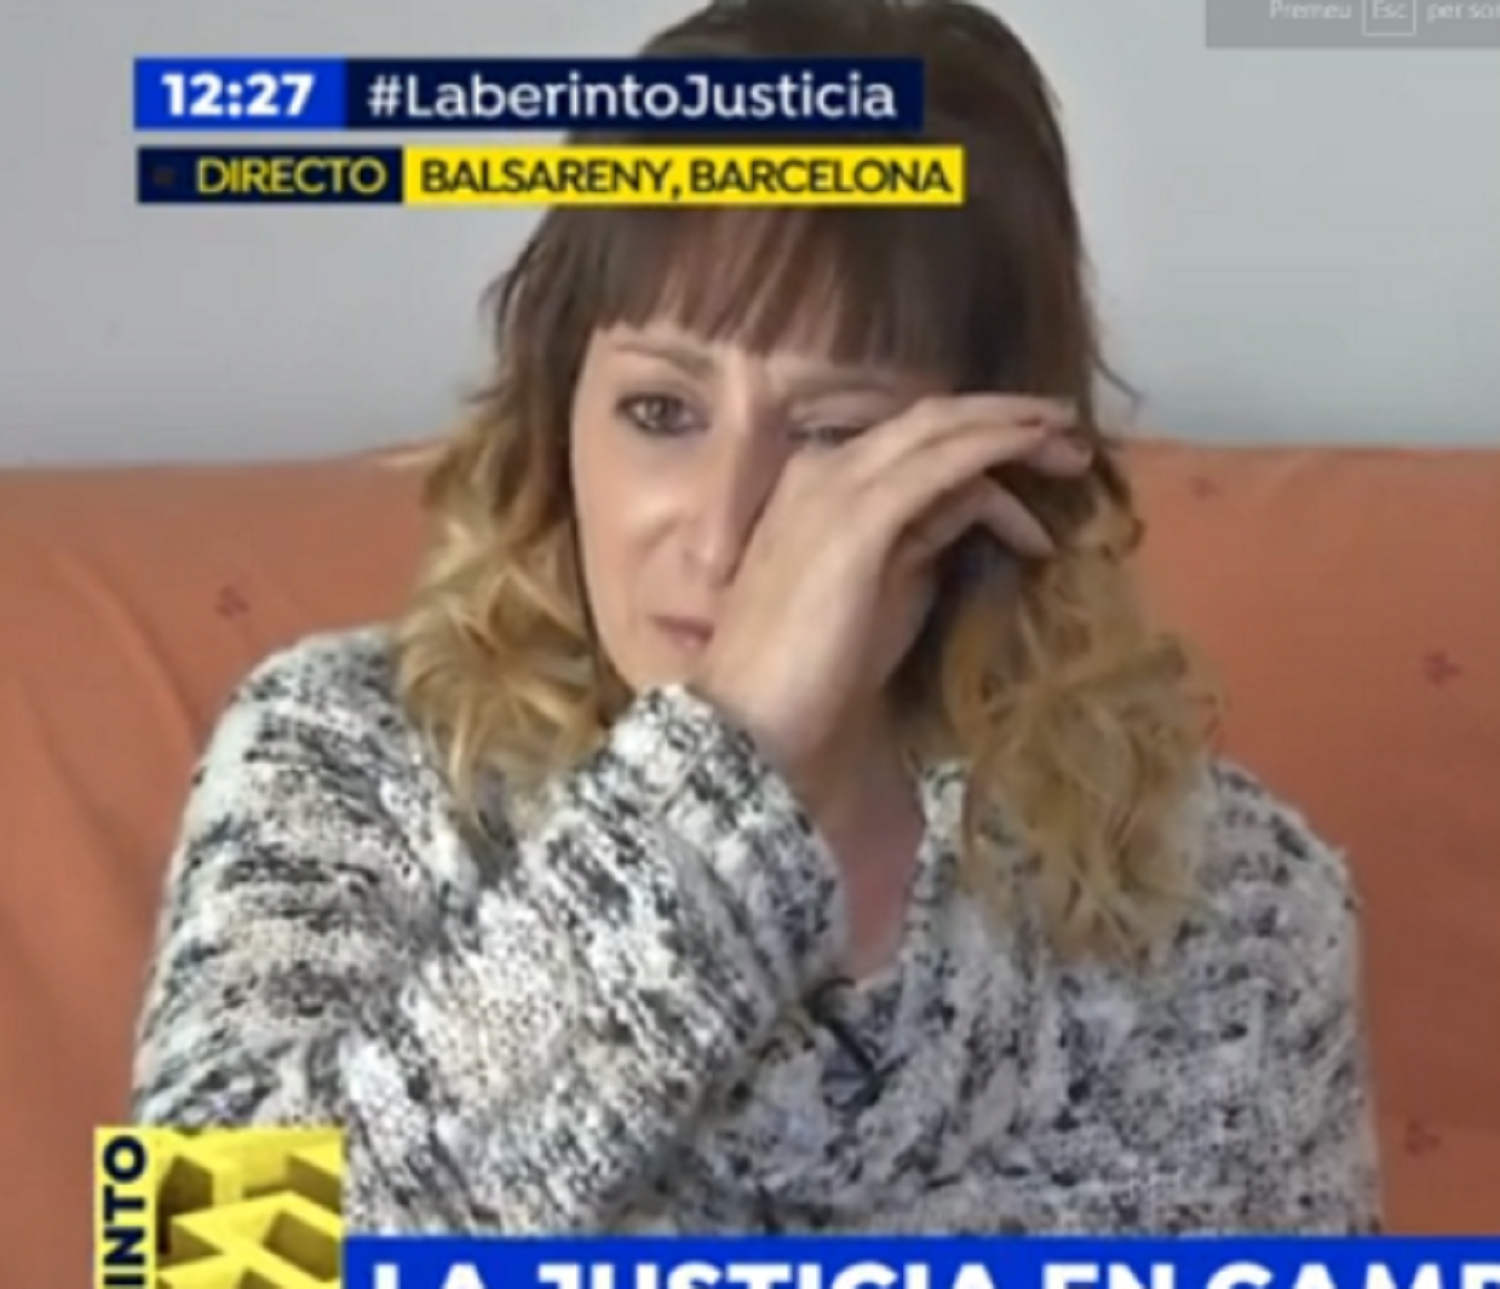 Condenada por amenazas la ultra a quien Rajoy dio apoyo